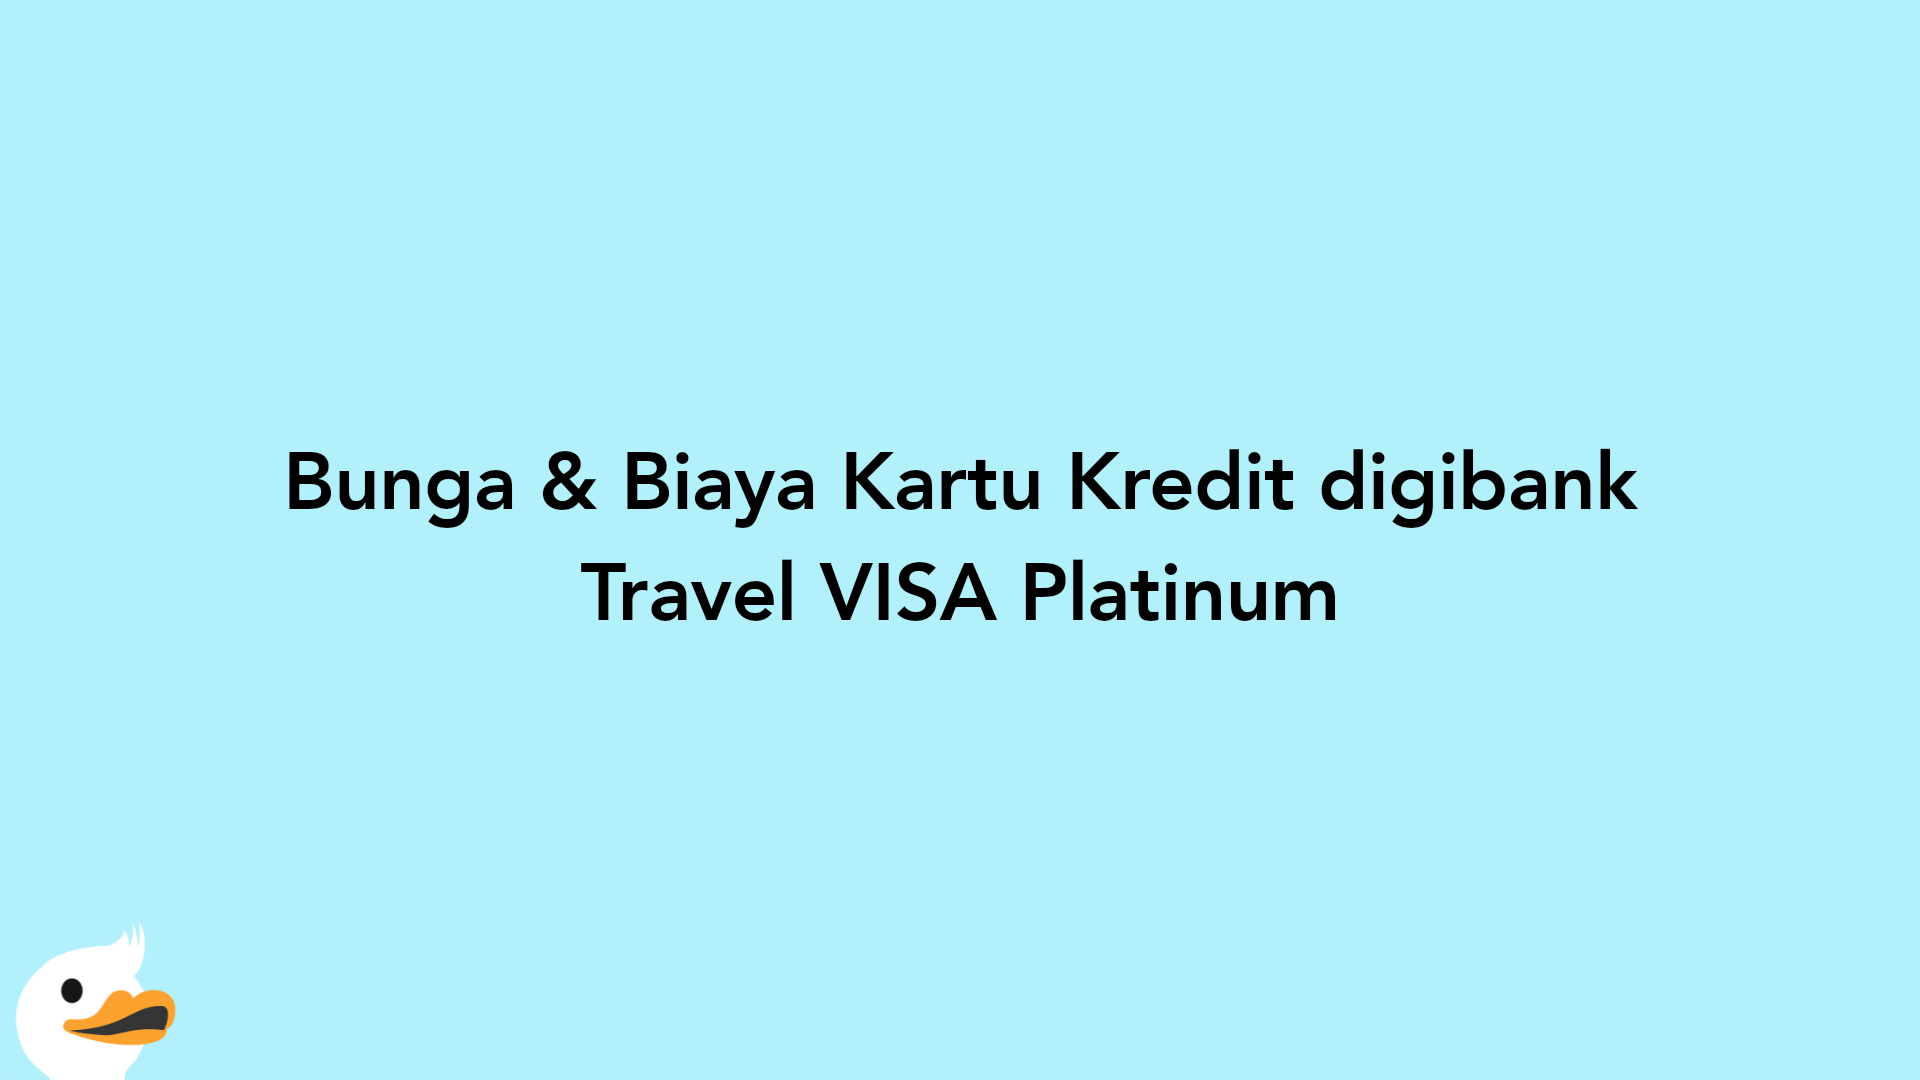 Bunga & Biaya Kartu Kredit digibank Travel VISA Platinum